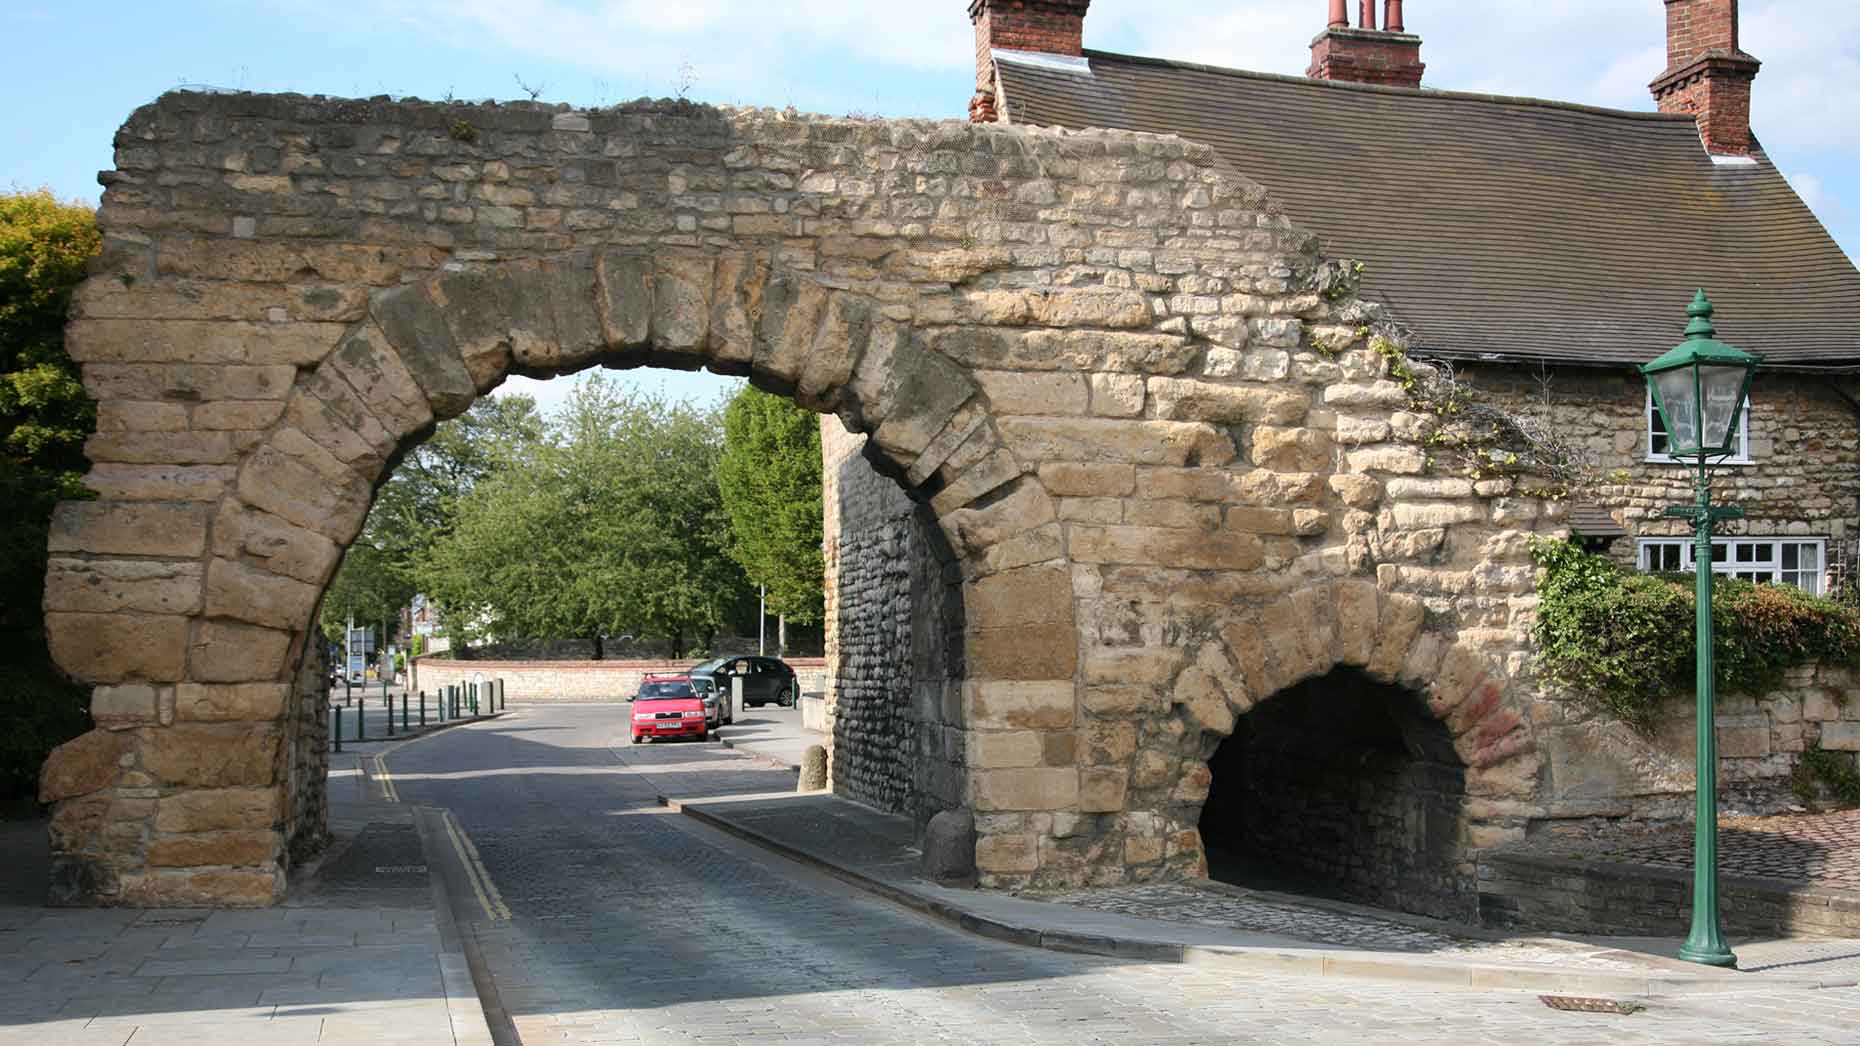 Newport Arch before the repairs began.